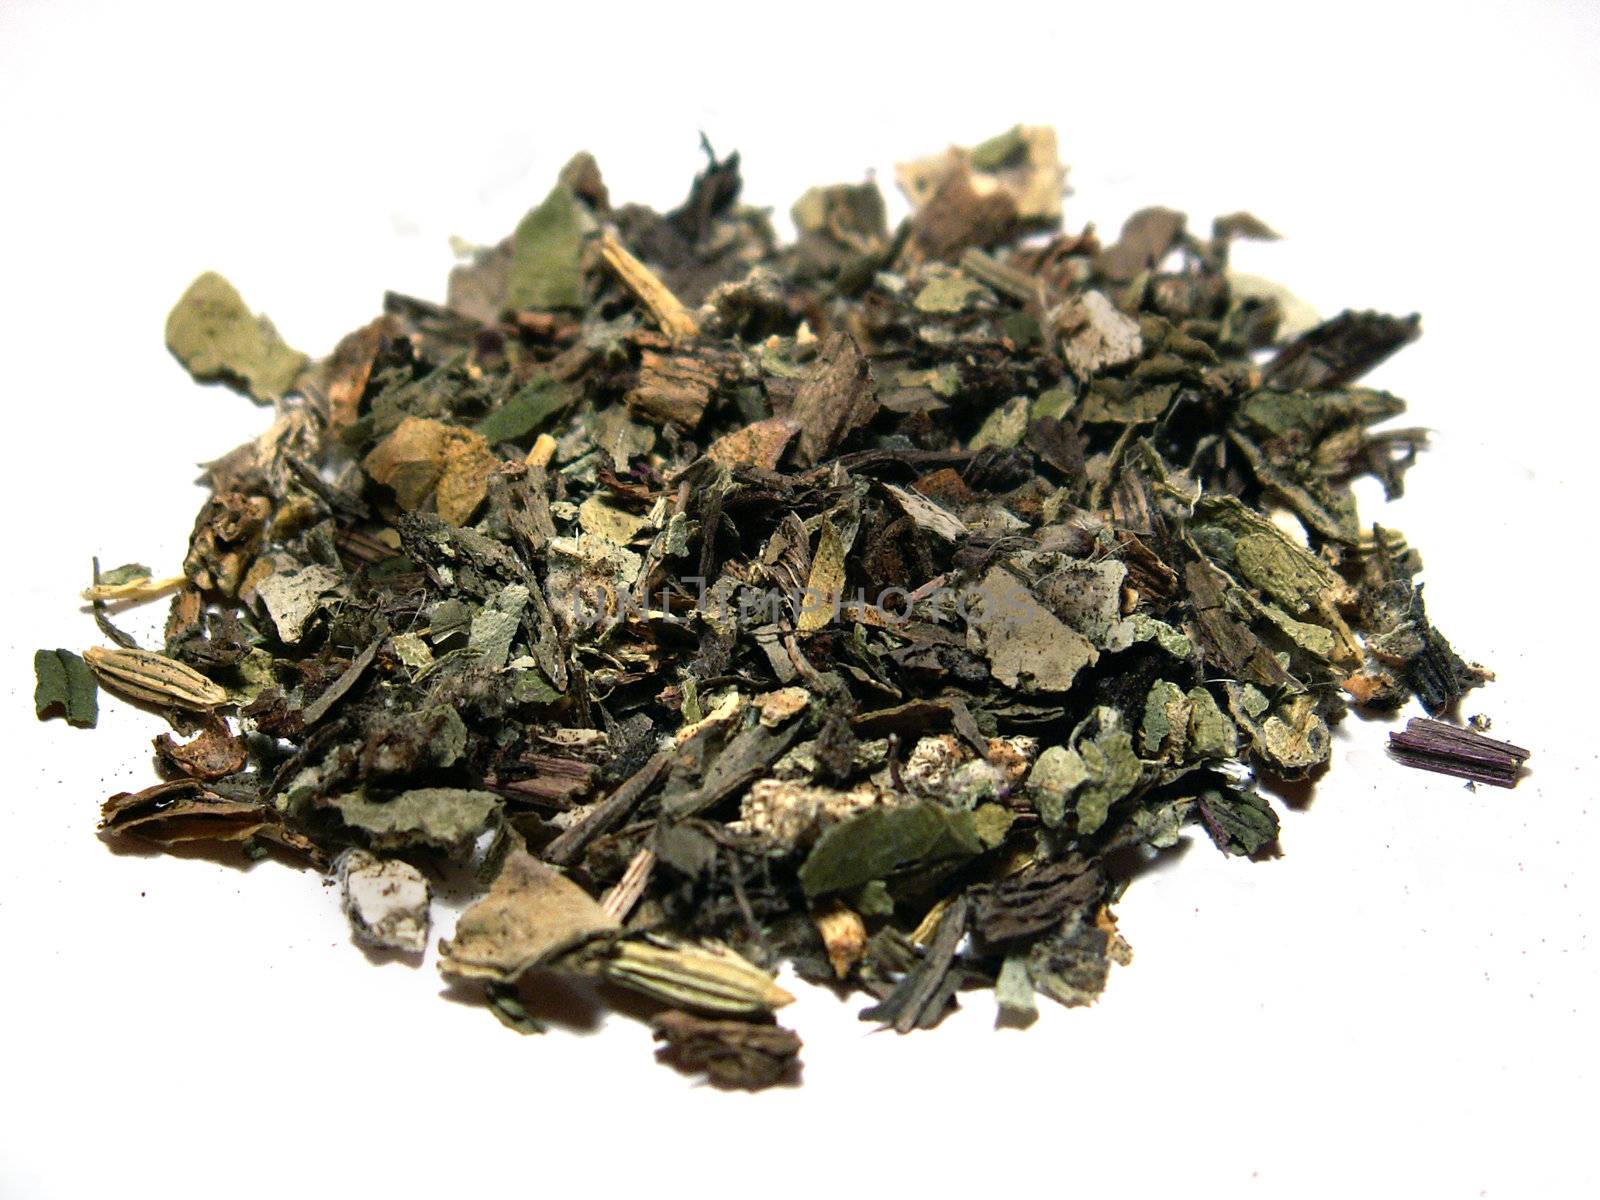 detail of a herbal tea